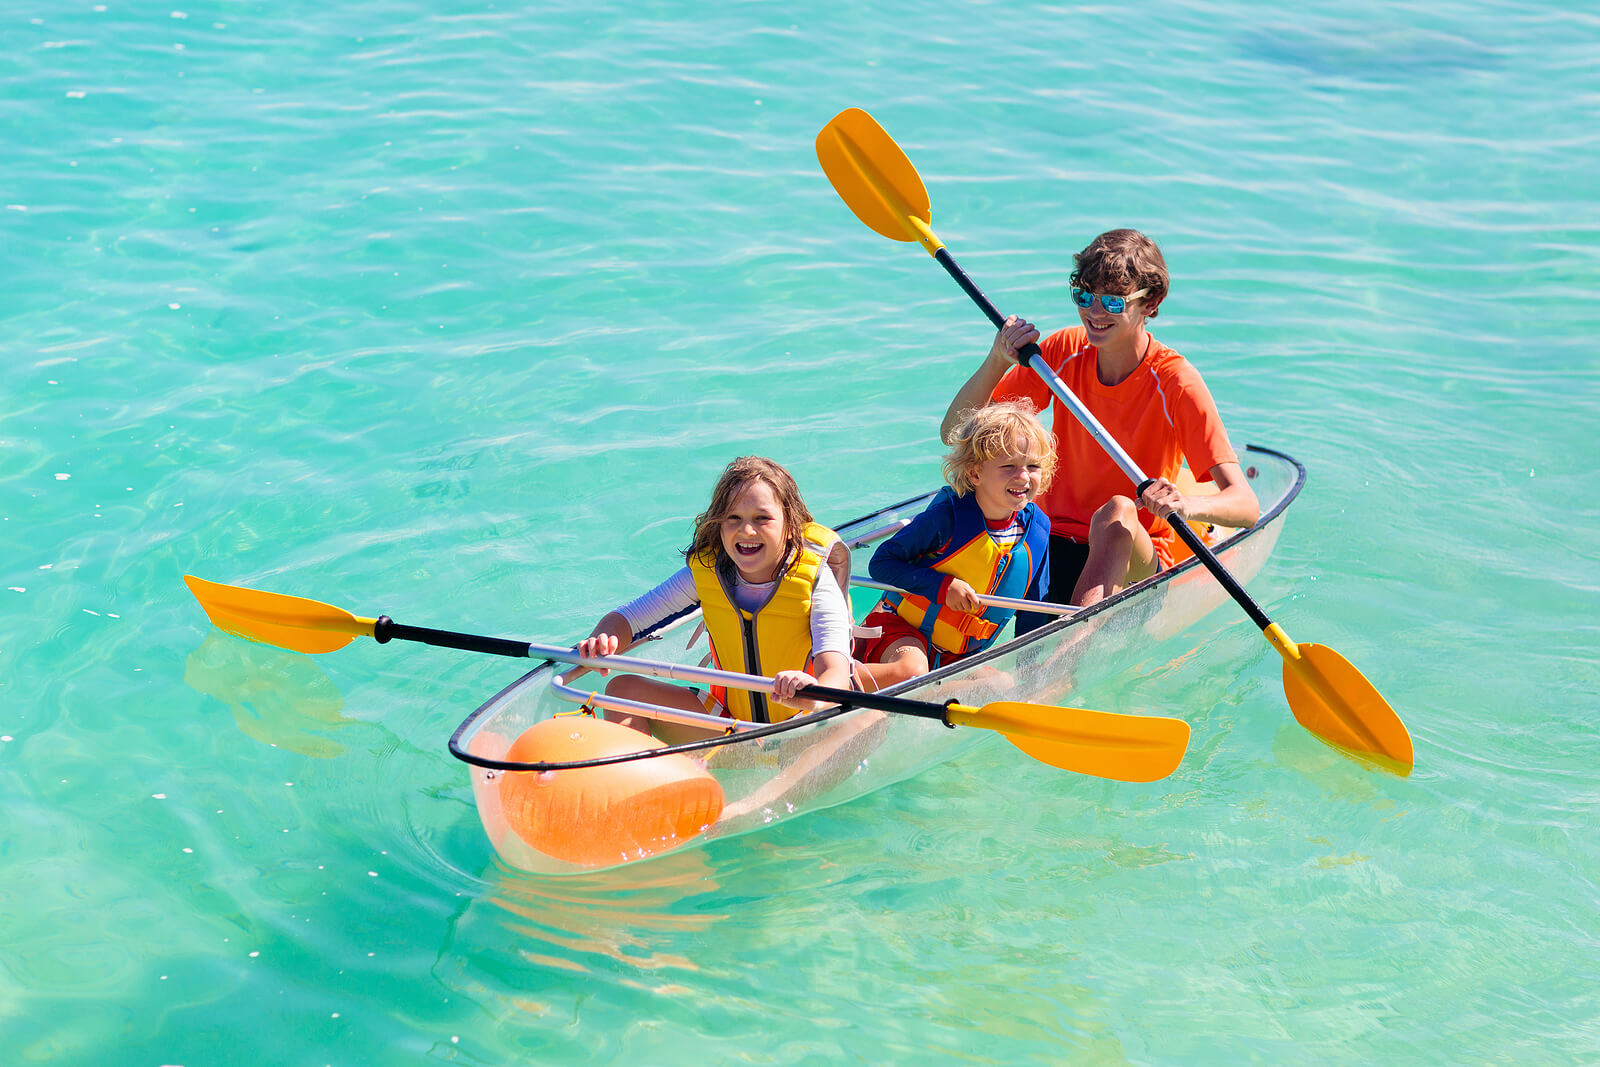 Bambino in kayak grazie ai benefici della pratica sportiva.